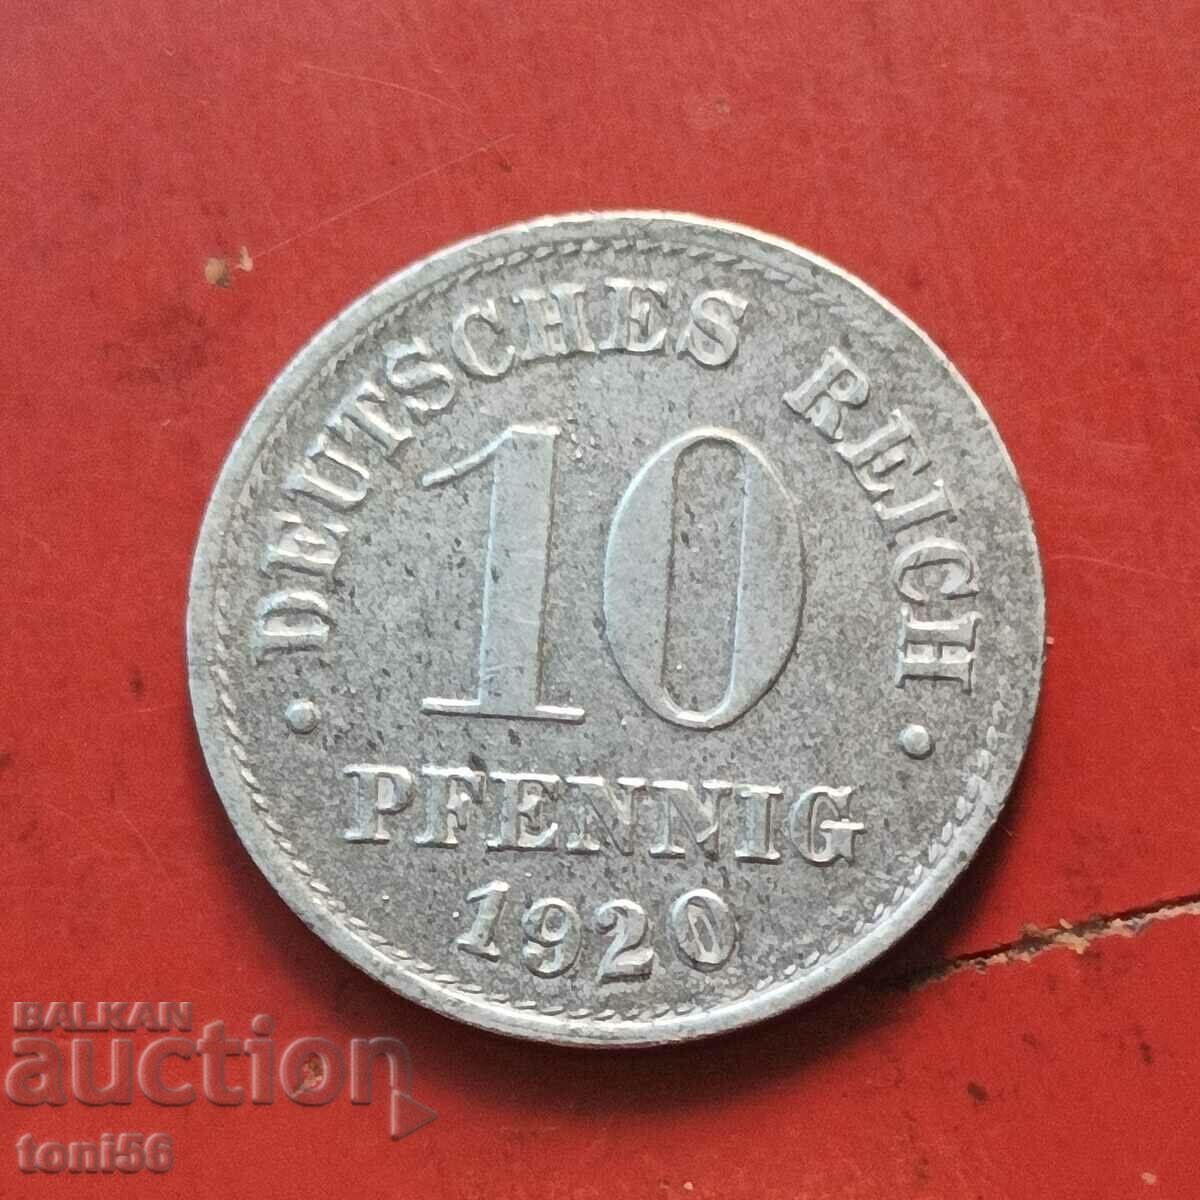 Germany 10 Pfennig 1920 - Fe